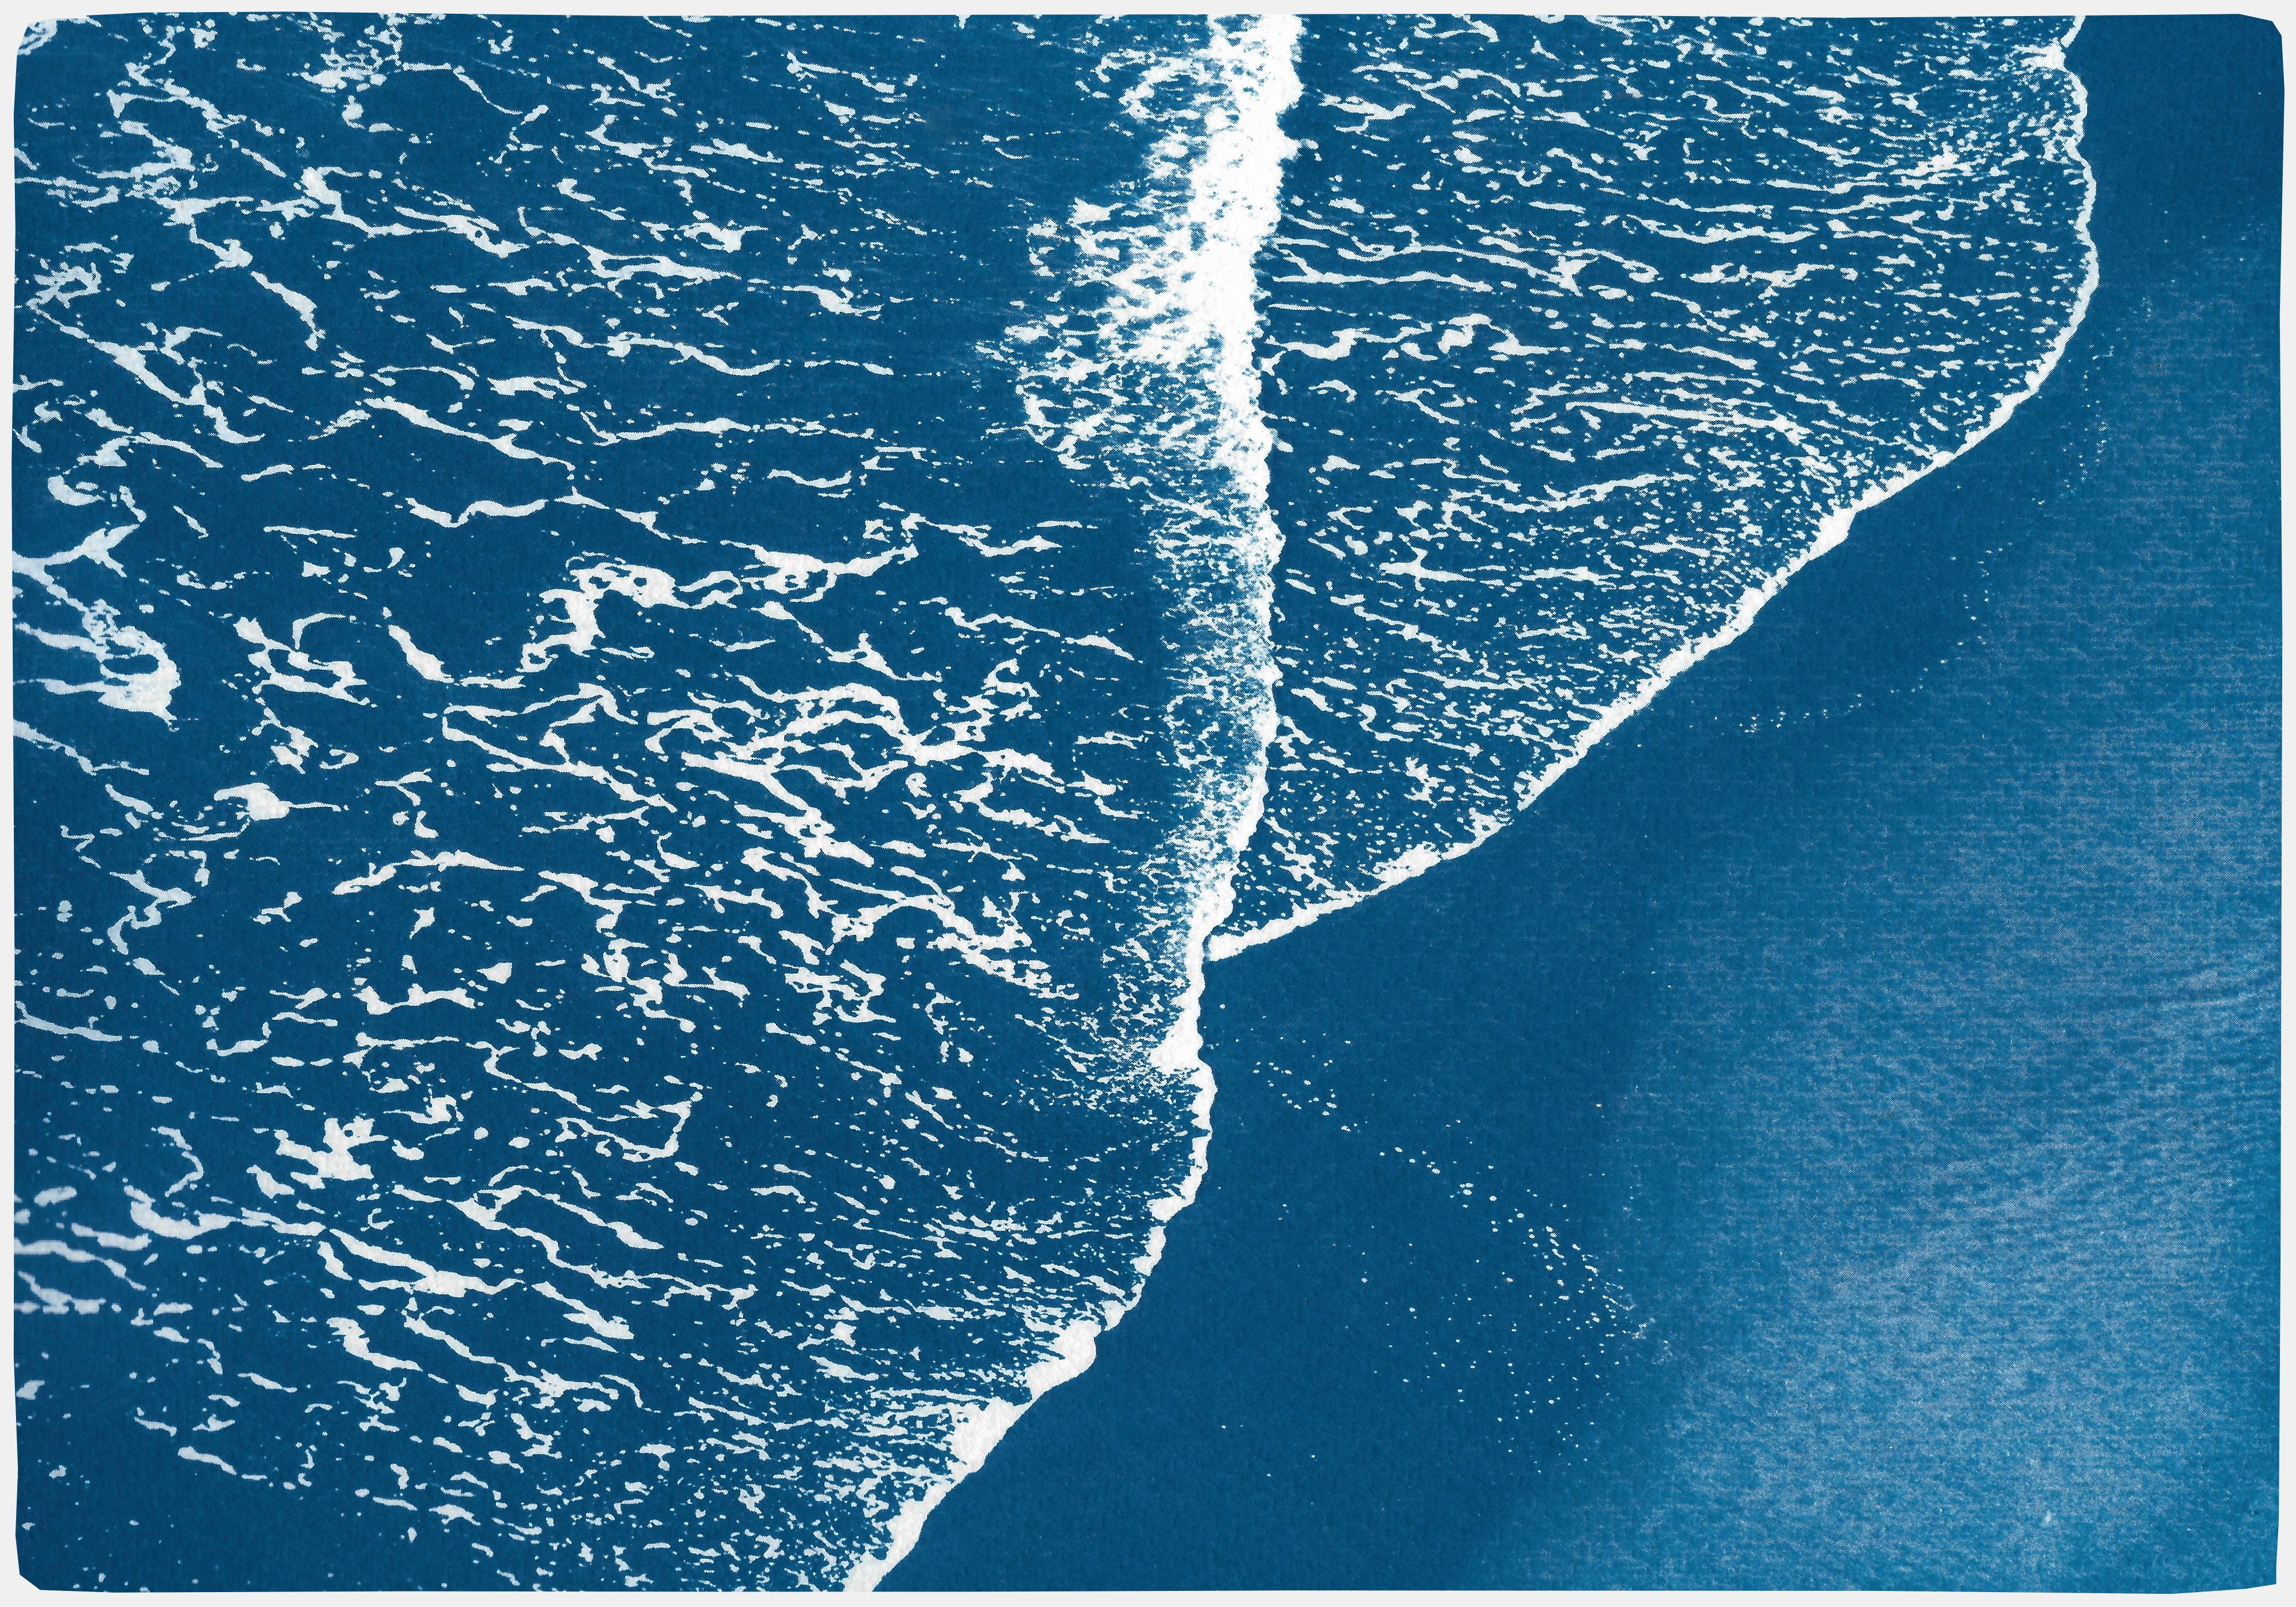 Landscape Painting Kind of Cyan - Blue Pacific Foamy Shorelines, Horizontal Calm Seascape, Minimal Waterscape (Paysage aquatique minimal) 